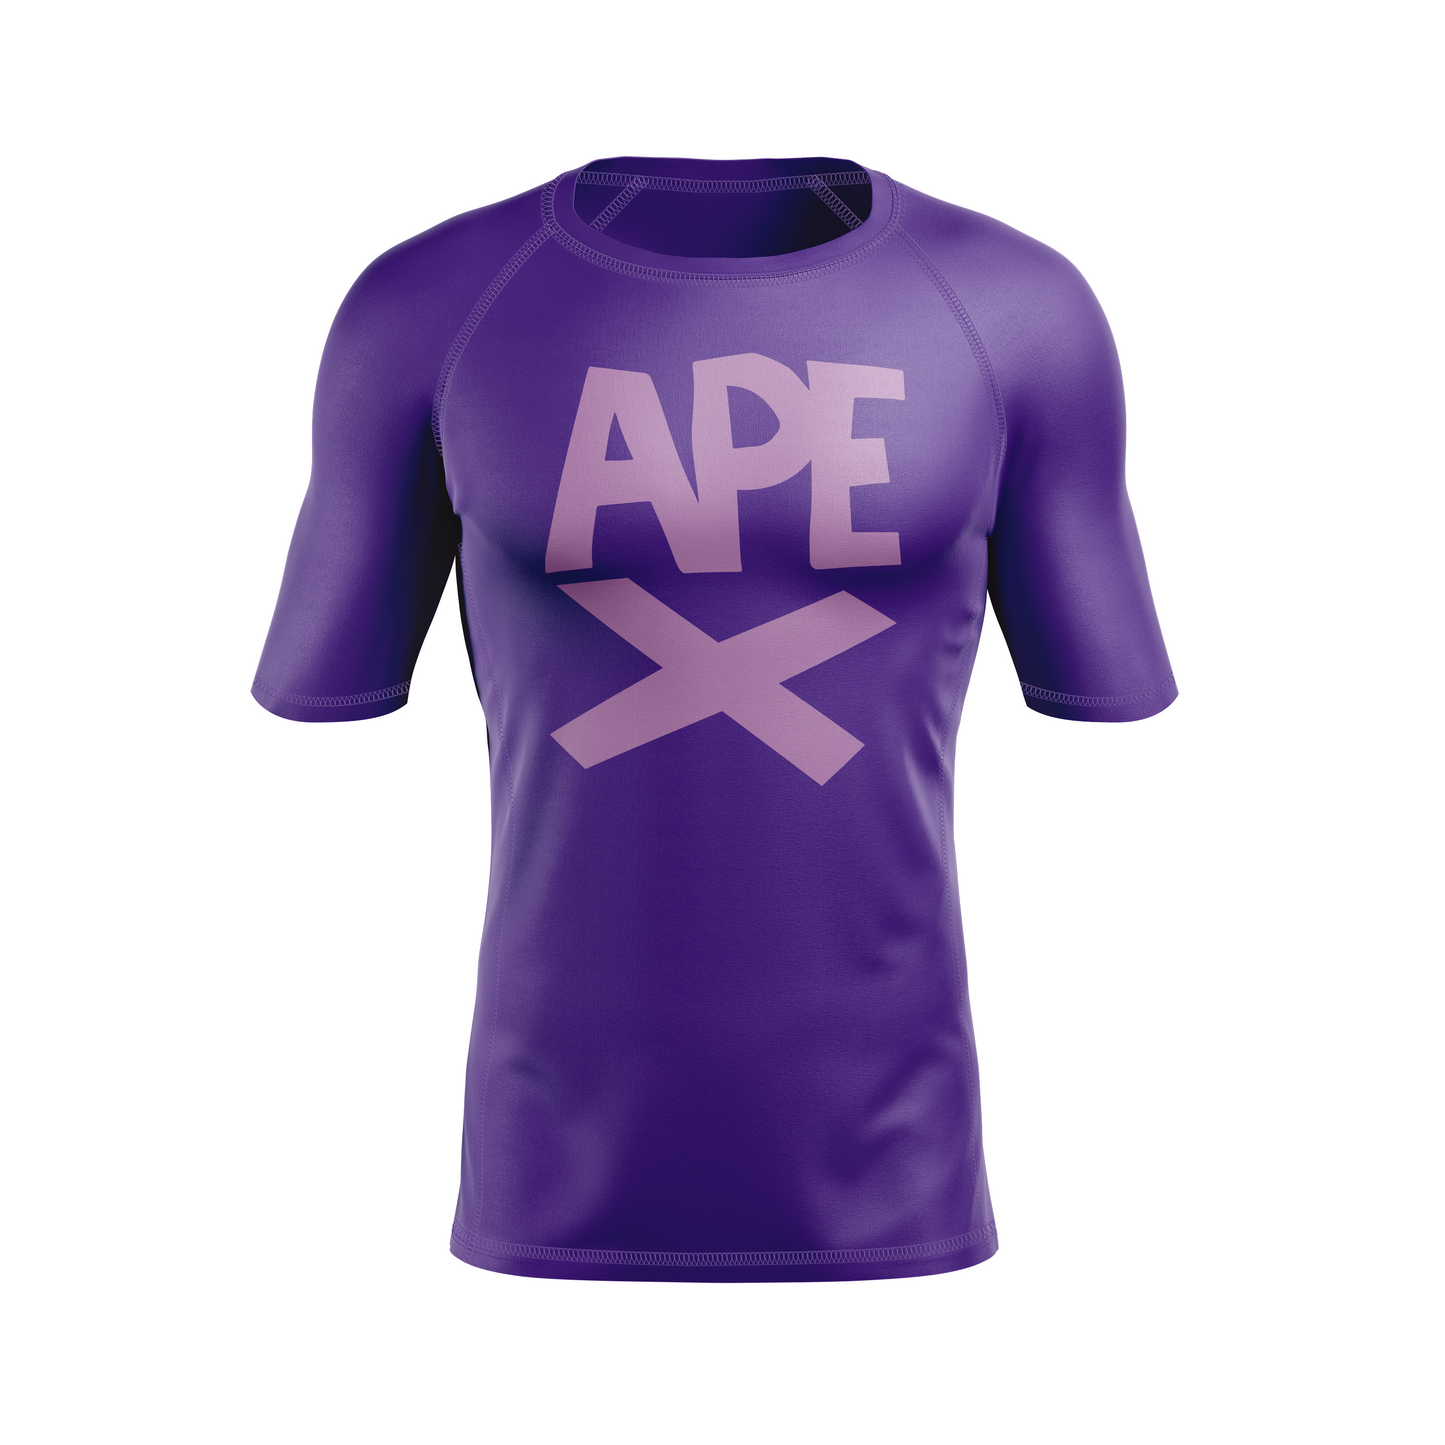 Apex Grappling men's rash guard Ape X, purple